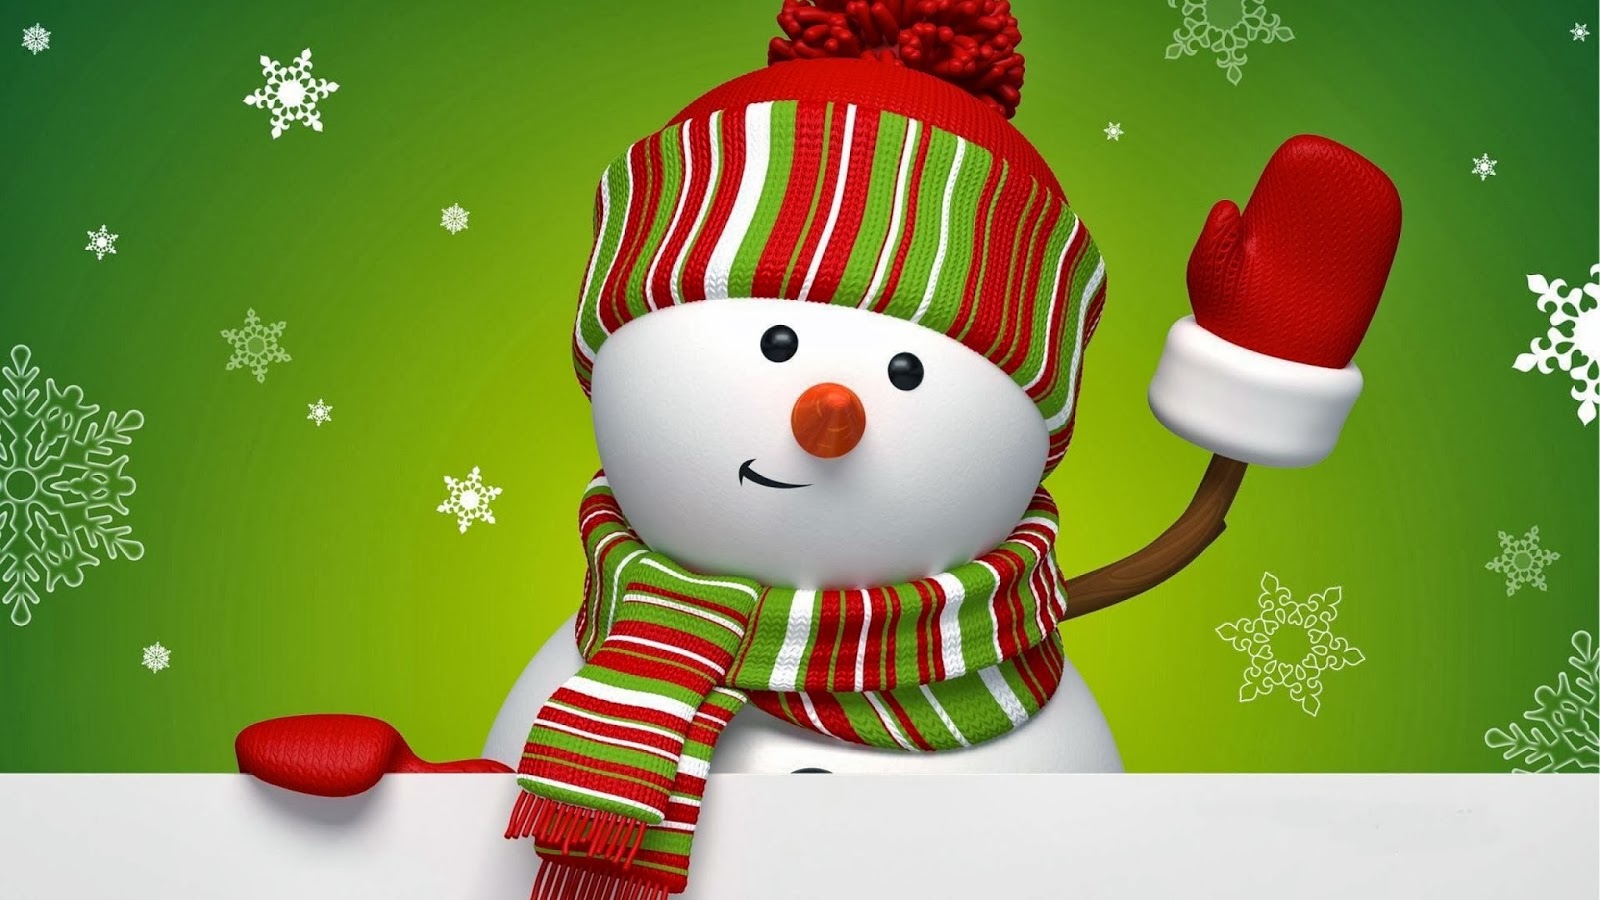 크리스마스 눈사람 벽지,크리스마스,눈사람,소설 속의 인물,크리스마스 장식,과자